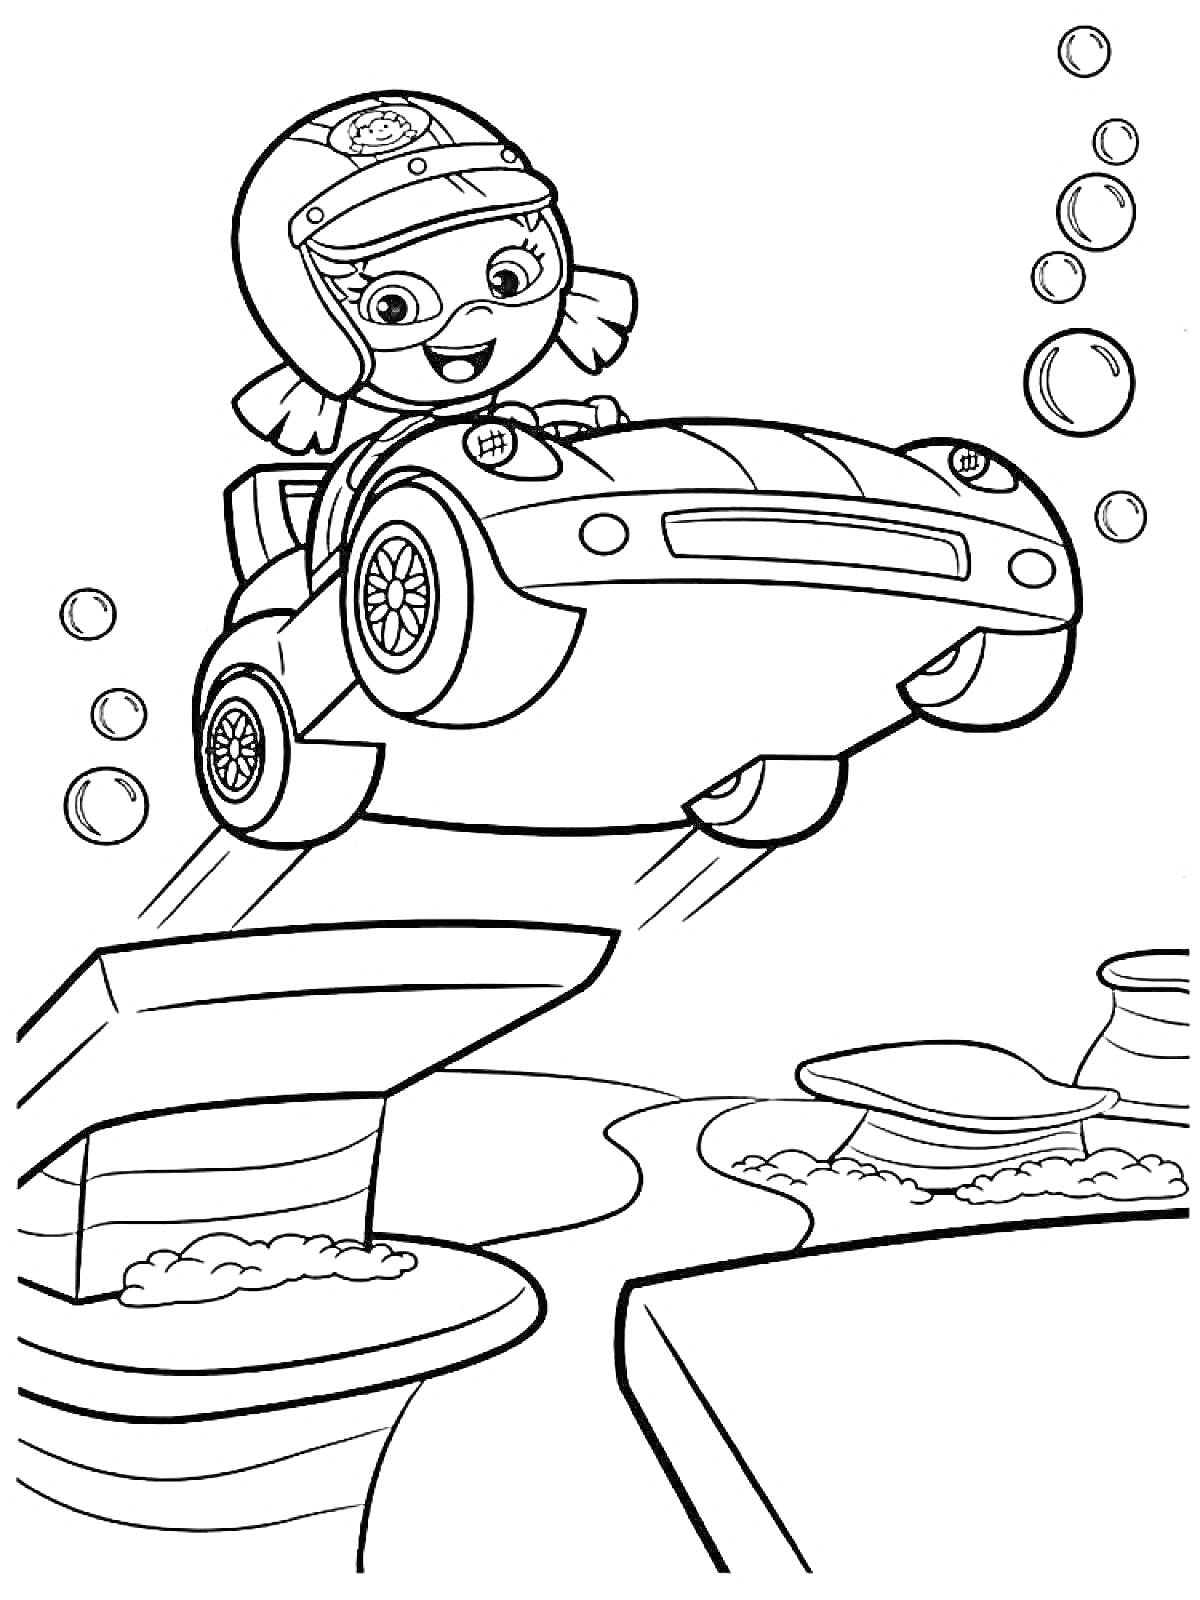 Гуппи за рулем машины под водой с пузырьками и подводным ландшафтом